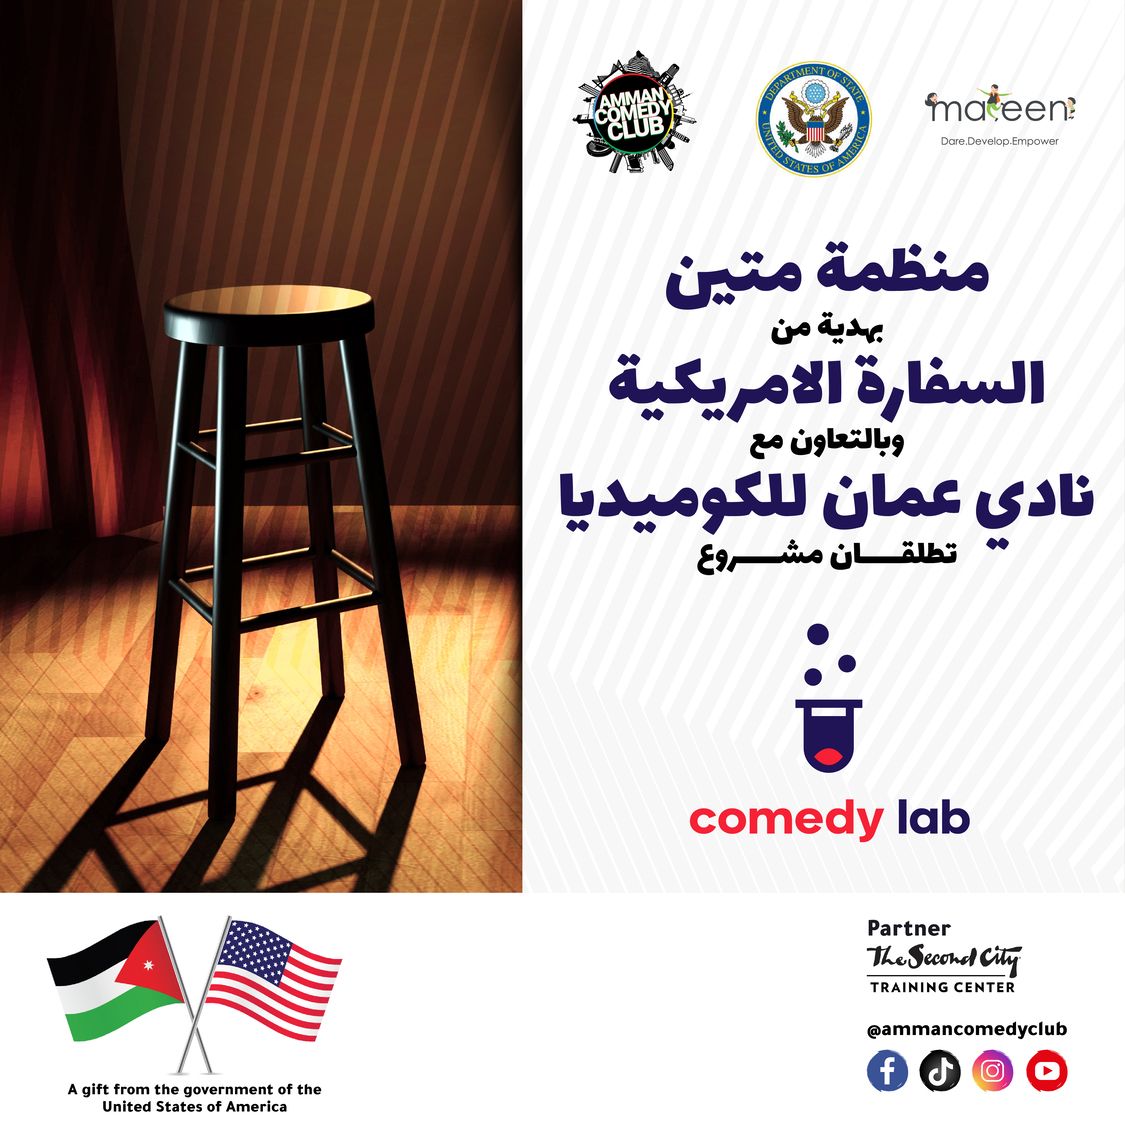 منظمة متين بالشركة مع نادي عمان للكوميديا يُطلقان مشروع “كوميدي لاب”